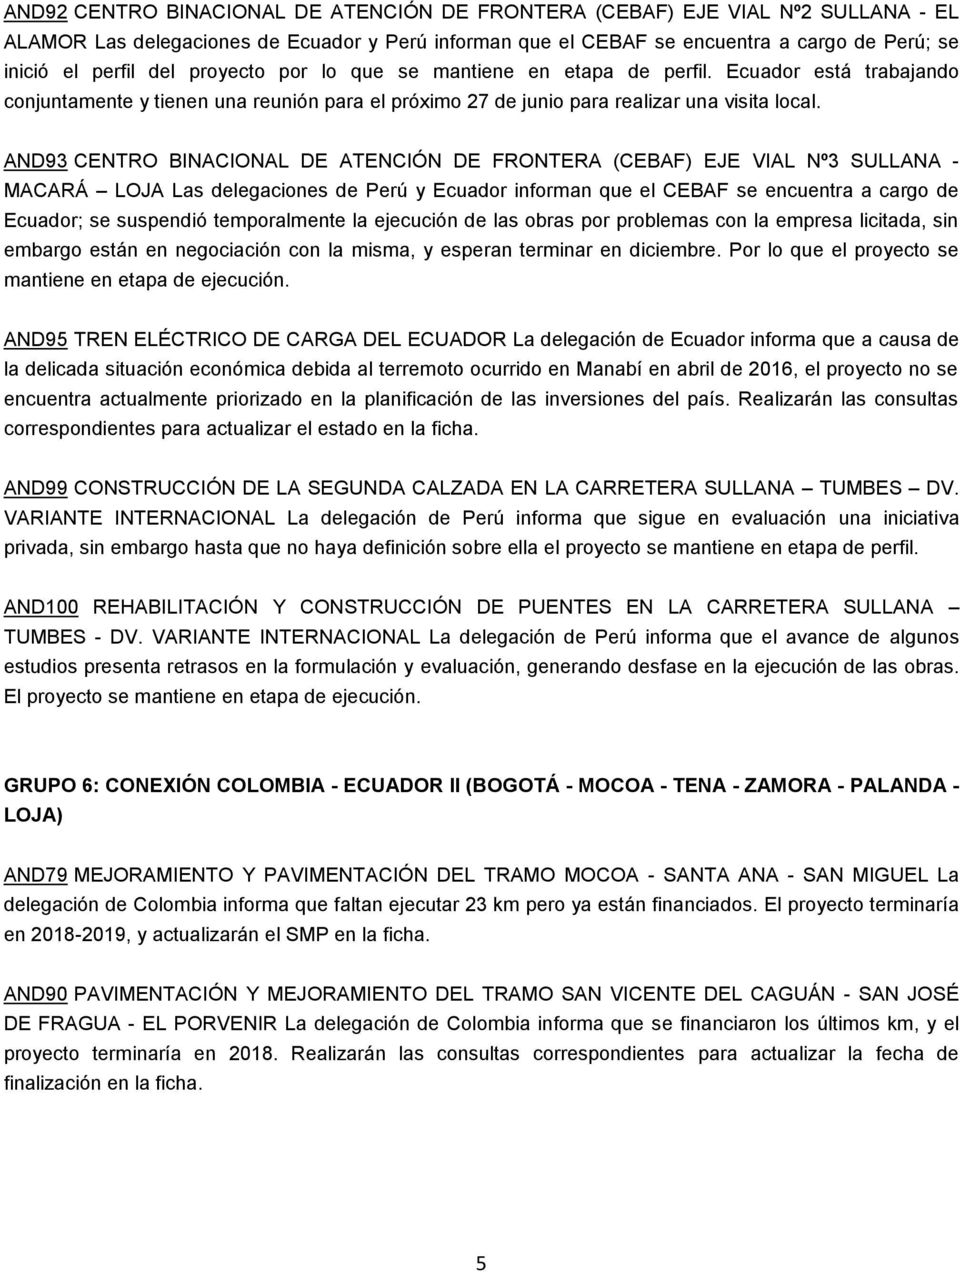 AND93 CENTRO BINACIONAL DE ATENCIÓN DE FRONTERA (CEBAF) EJE VIAL Nº3 SULLANA - MACARÁ LOJA Las delegaciones de Perú y Ecuador informan que el CEBAF se encuentra a cargo de Ecuador; se suspendió